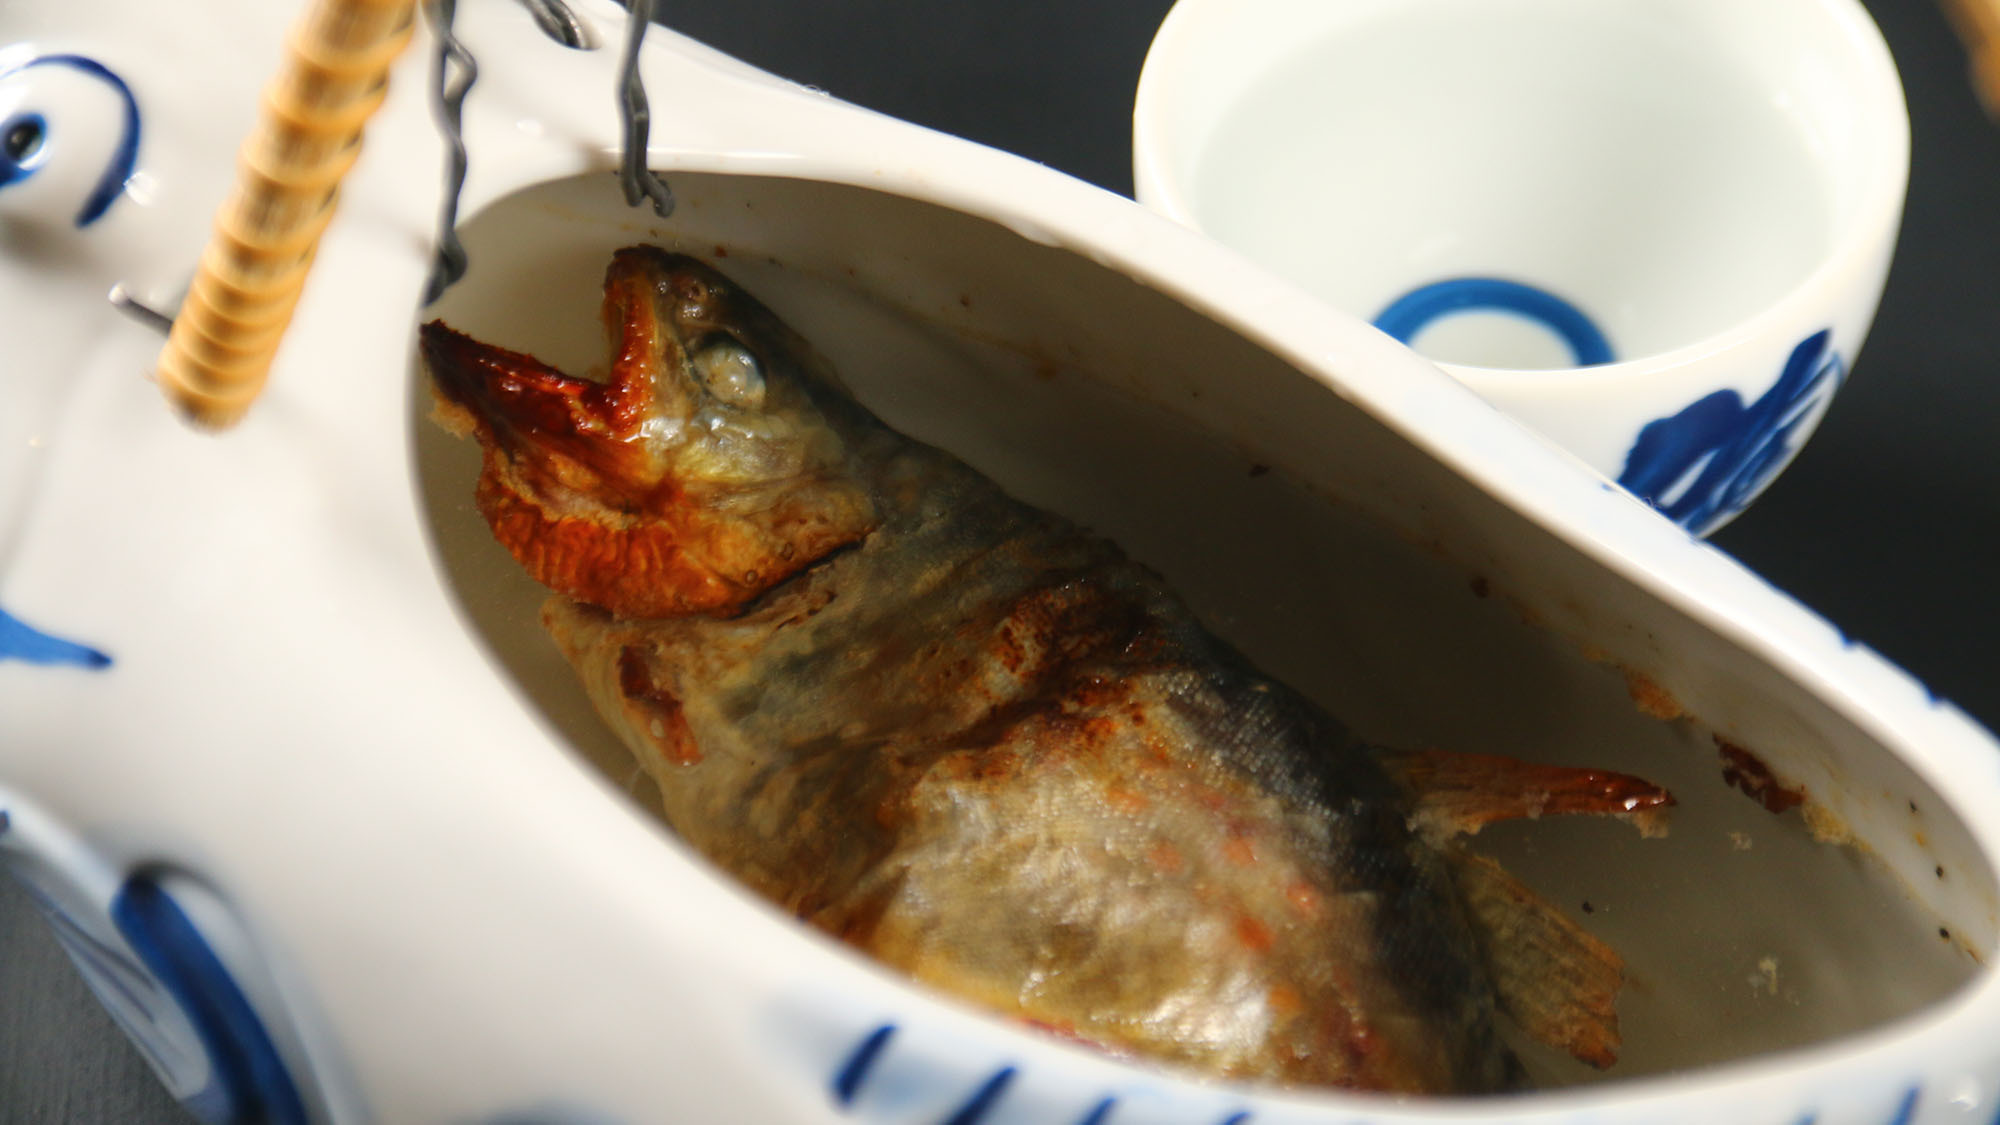 岩魚の骨酒岩魚の塩焼きにアツアツの酒を注ぐ岩魚の旨味が出た琥珀色の酒